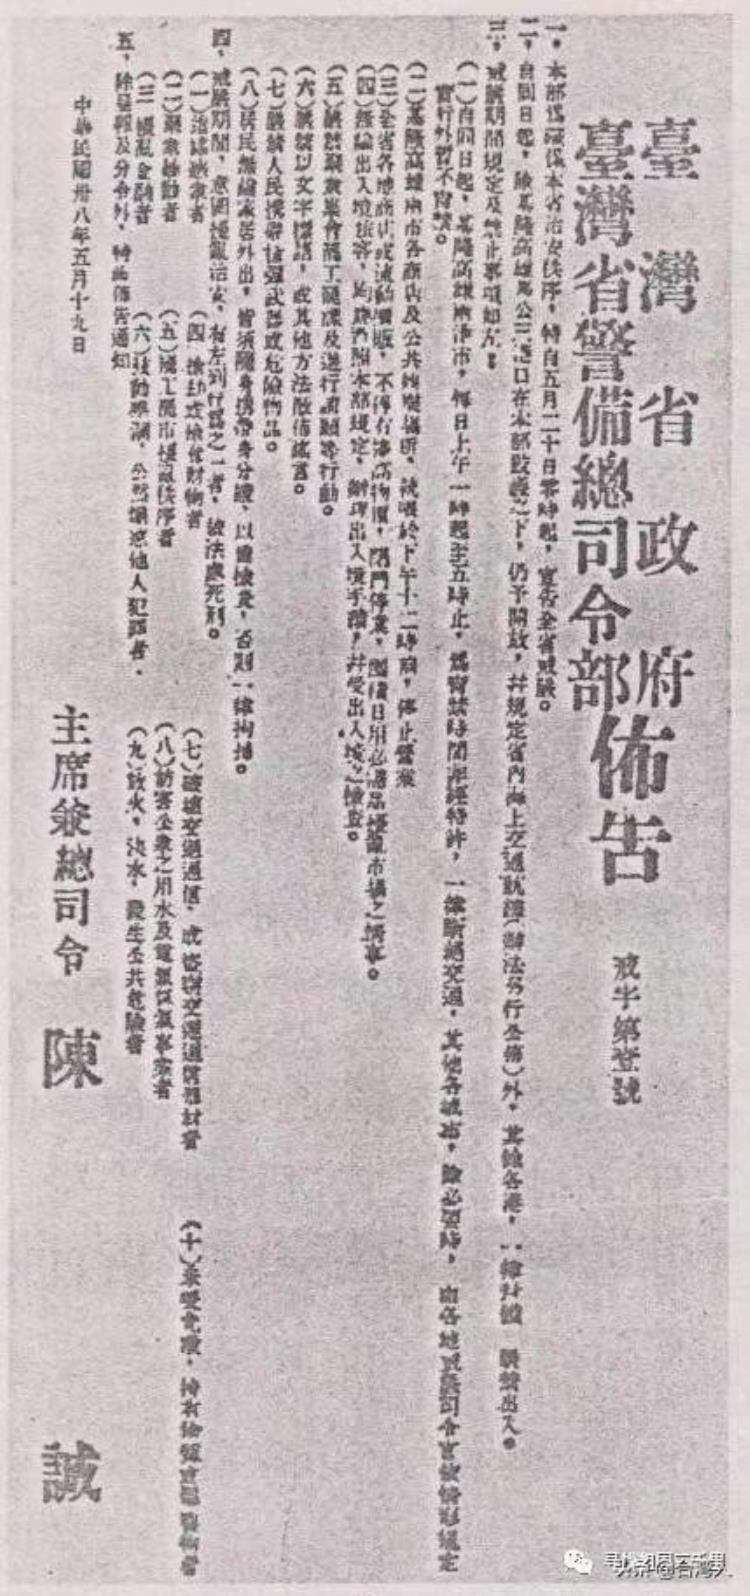 五十年代台湾白色恐怖「林书扬析论台湾50年代白色恐怖意义与实态」